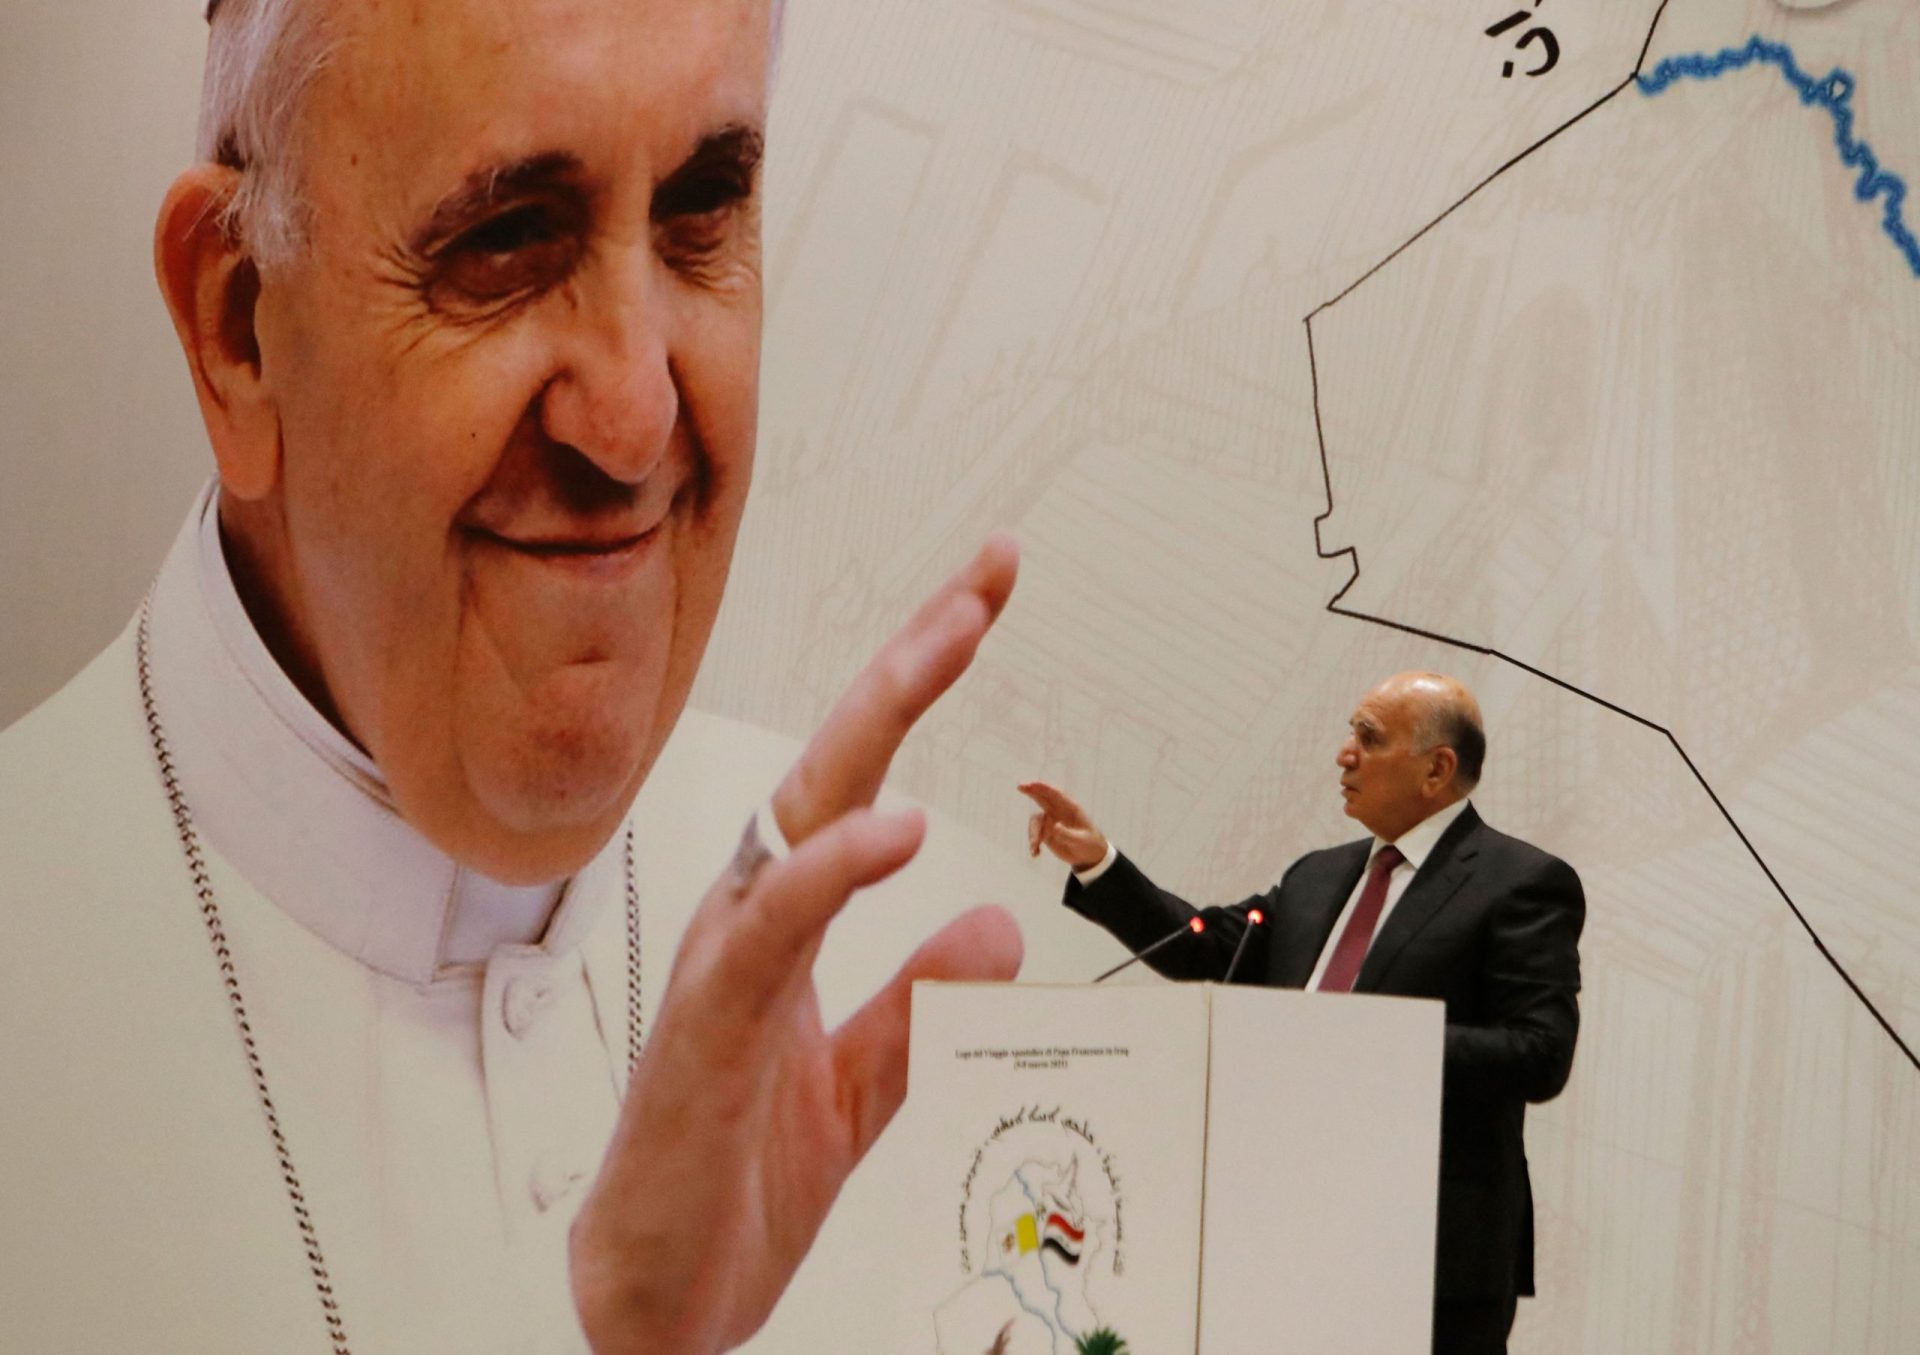 Iraque. A mais perigosa visita do Papa Francisco